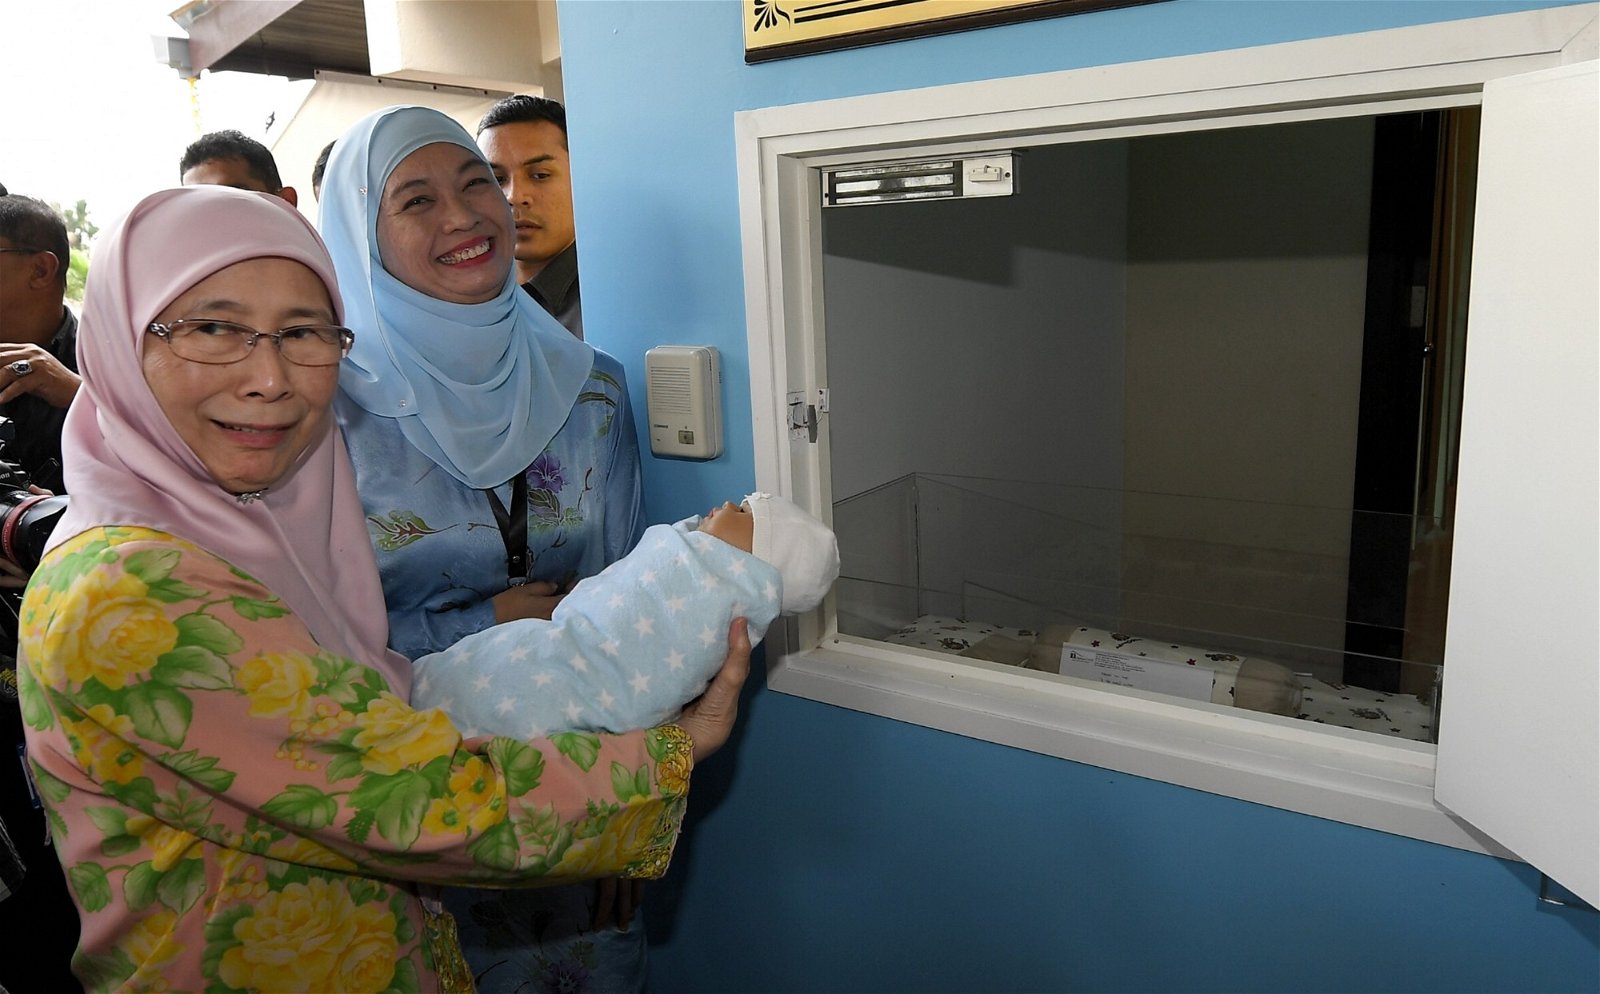 旺阿兹莎（左）拜访八打灵再也一家孤儿关怀保护中心后，向媒体记者展示如何将婴儿放入该中心的弃婴舱。